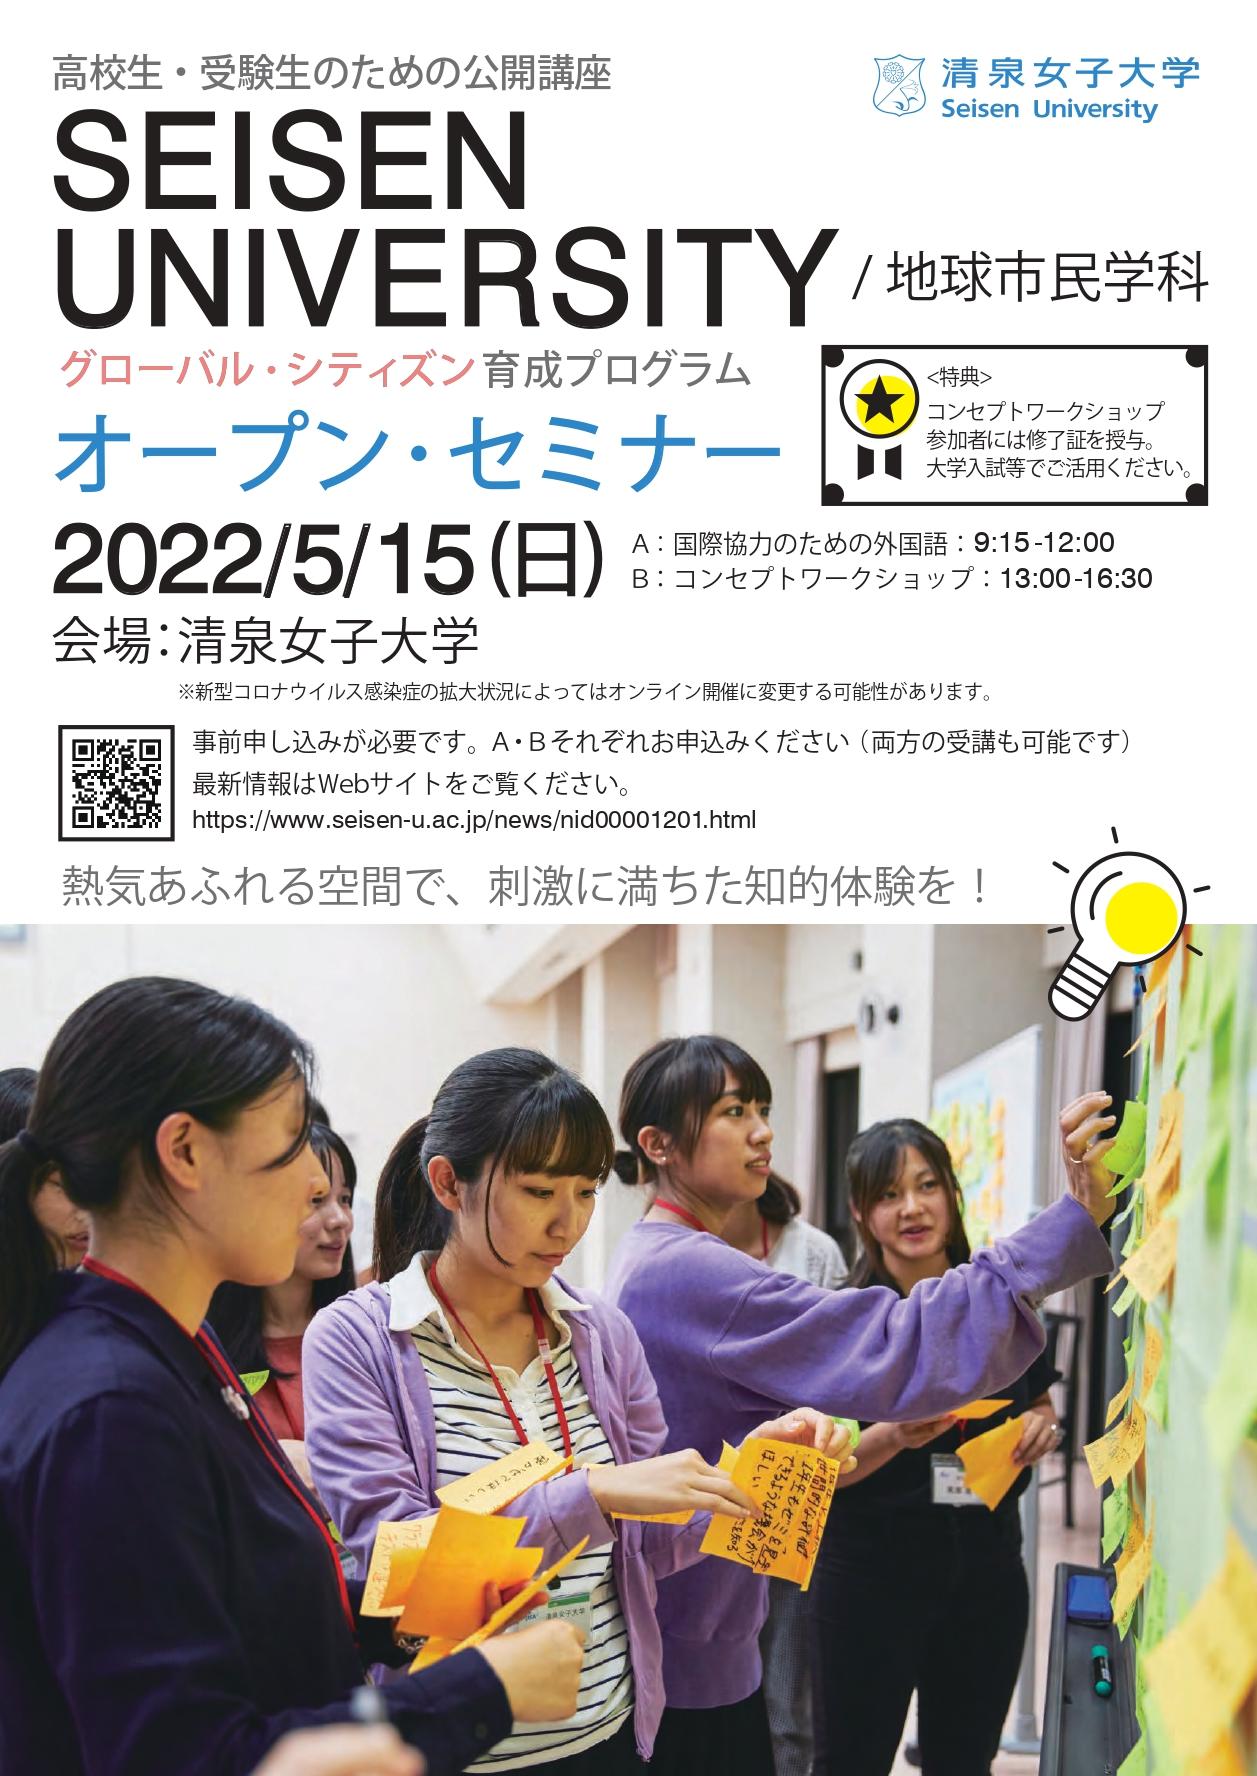 清泉女子大学が5月15日開催の高校生向けイベント「グローバル・シティズン育成プログラム」オープン・セミナー参加者を募集 -- グローバル人材の育成に特化した最先端の学びを体験